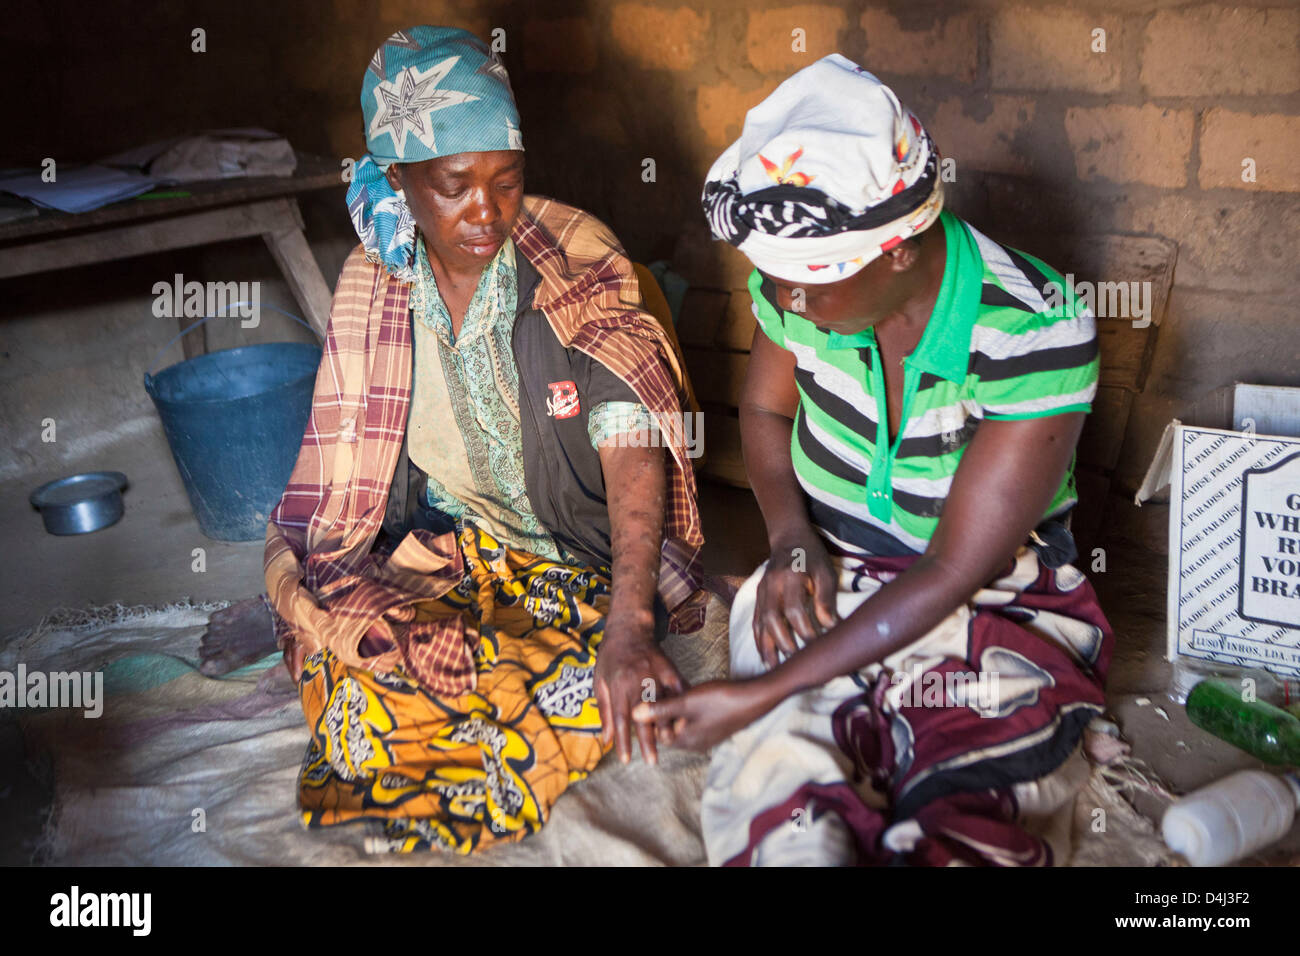 Afrikanische Frau zu Hause in ihrem Dorf, Mosambik. Sie ist in einem schlechten Gesundheitszustand und hat Besuch von einer Pflegekraft zu unterstützen. Stockfoto